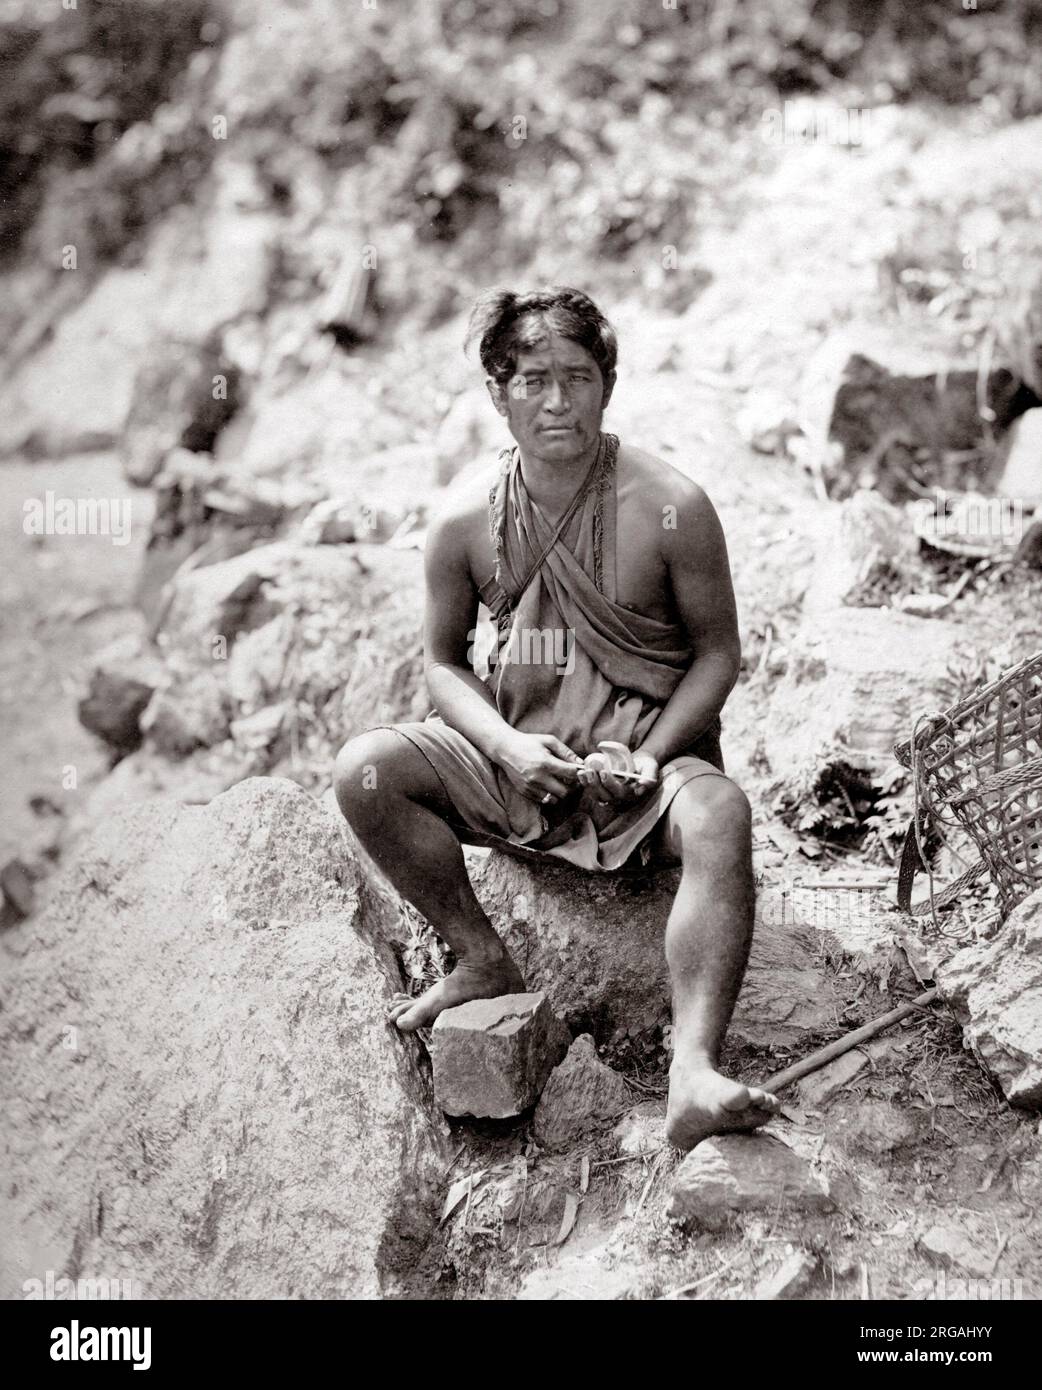 C. 1860 Indien - lepcha oder Rongkup Mann von Sikkim, Nepal, Bhutan. Samuel Bourne. Stockfoto